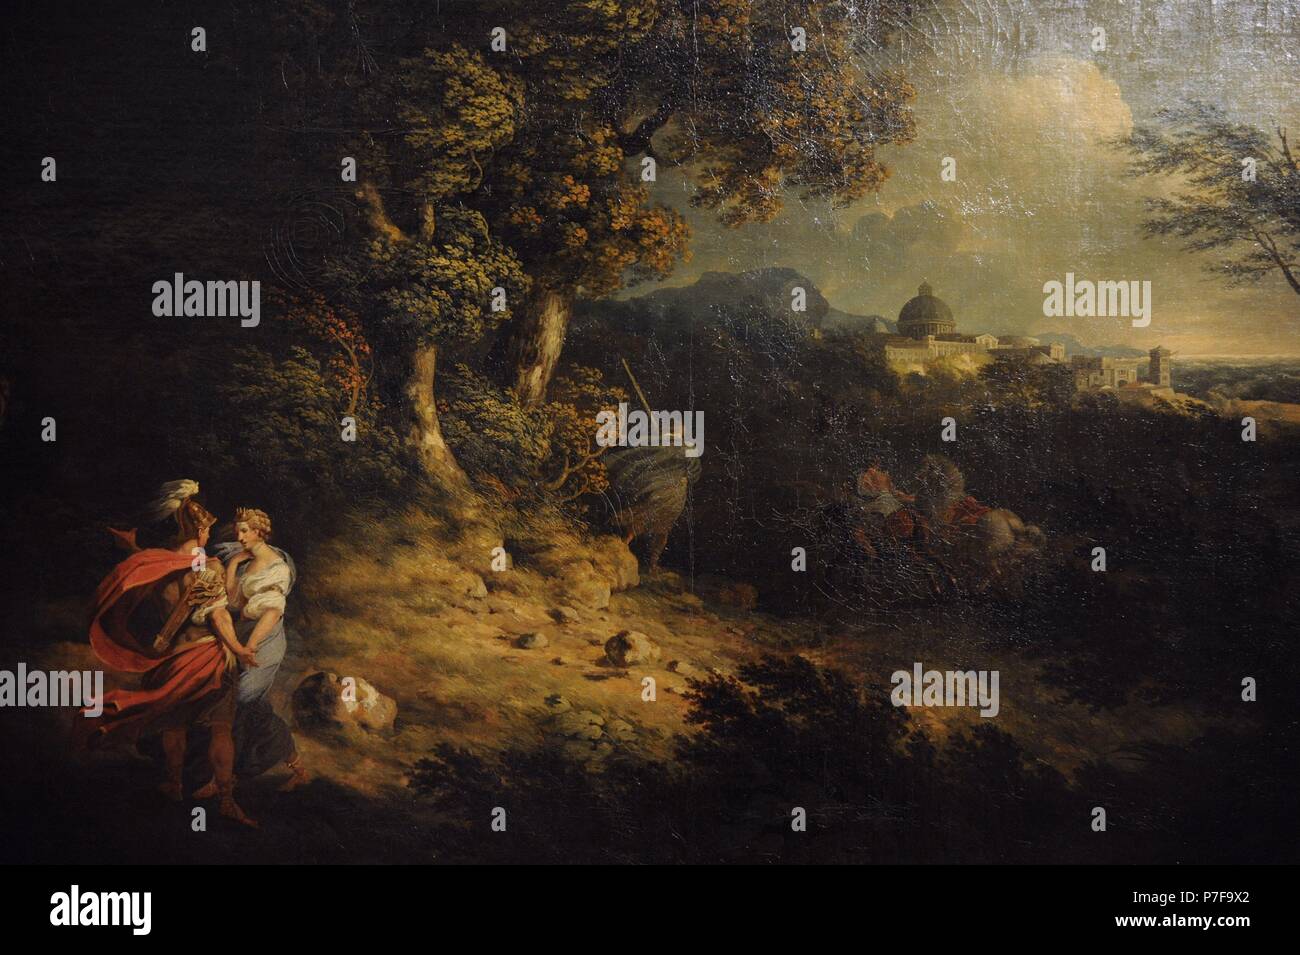 Thomas Jones (1742-1803). Englischer Maler. Landschaft mit Dido und Aeneas (Sturm), 1769. Die Eremitage. Sankt Petersburg. Russland. Stockfoto